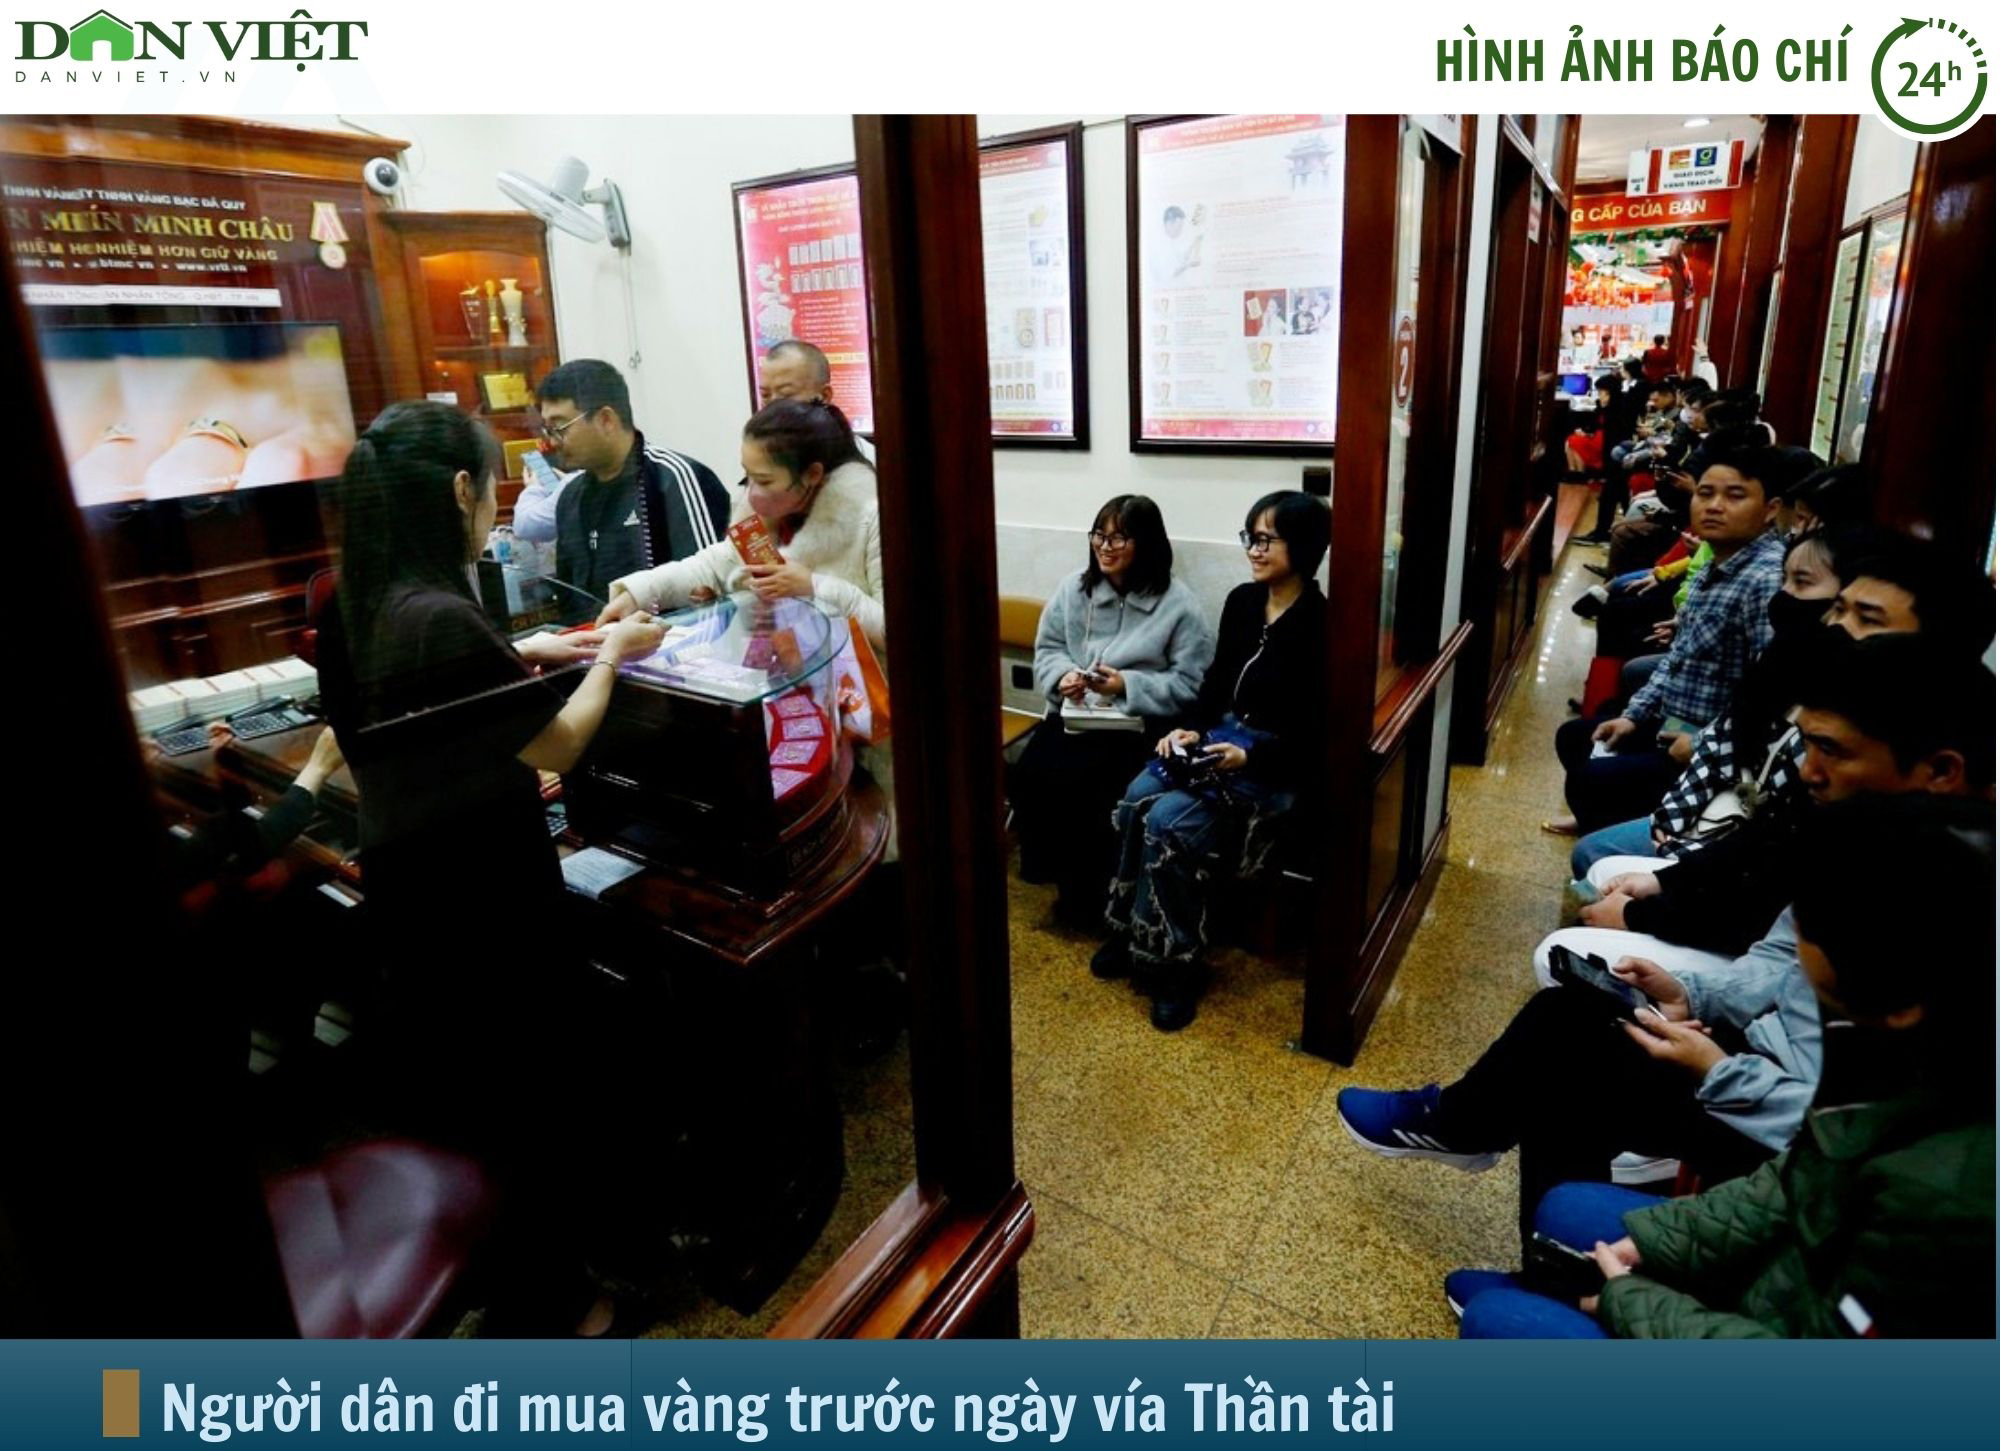 Hình ảnh báo chí 24h: Xếp hàng mua vàng trước ngày vía Thần tài ở Hà Nội- Ảnh 1.